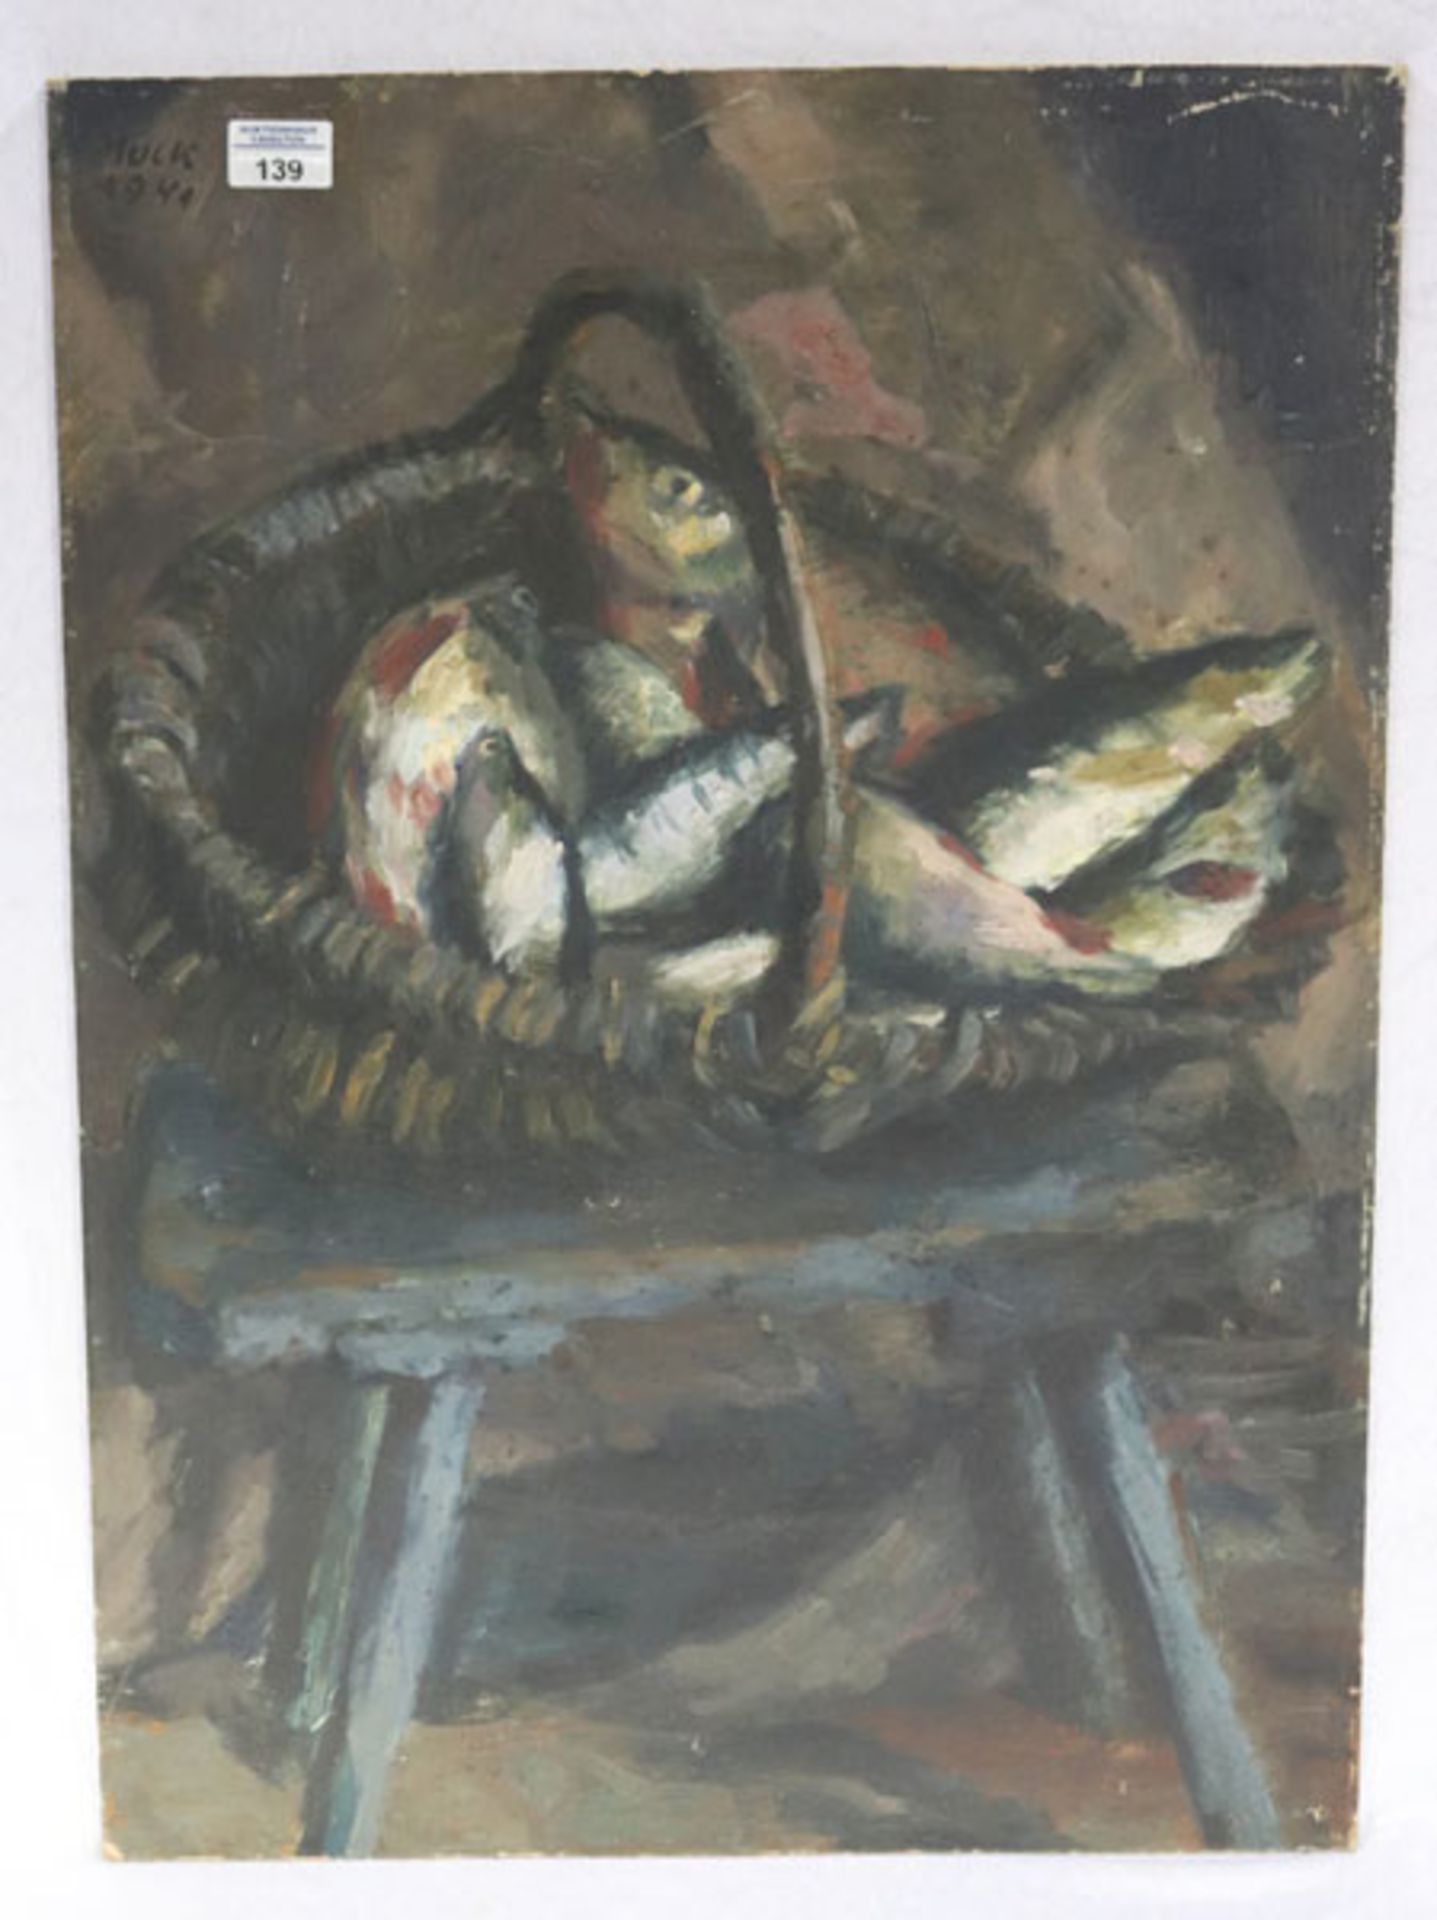 Gemälde ÖL/Malkarton 'Stillleben - Fische im Korb auf Hocker', signiert Muck ?, datiert 1949, ohne